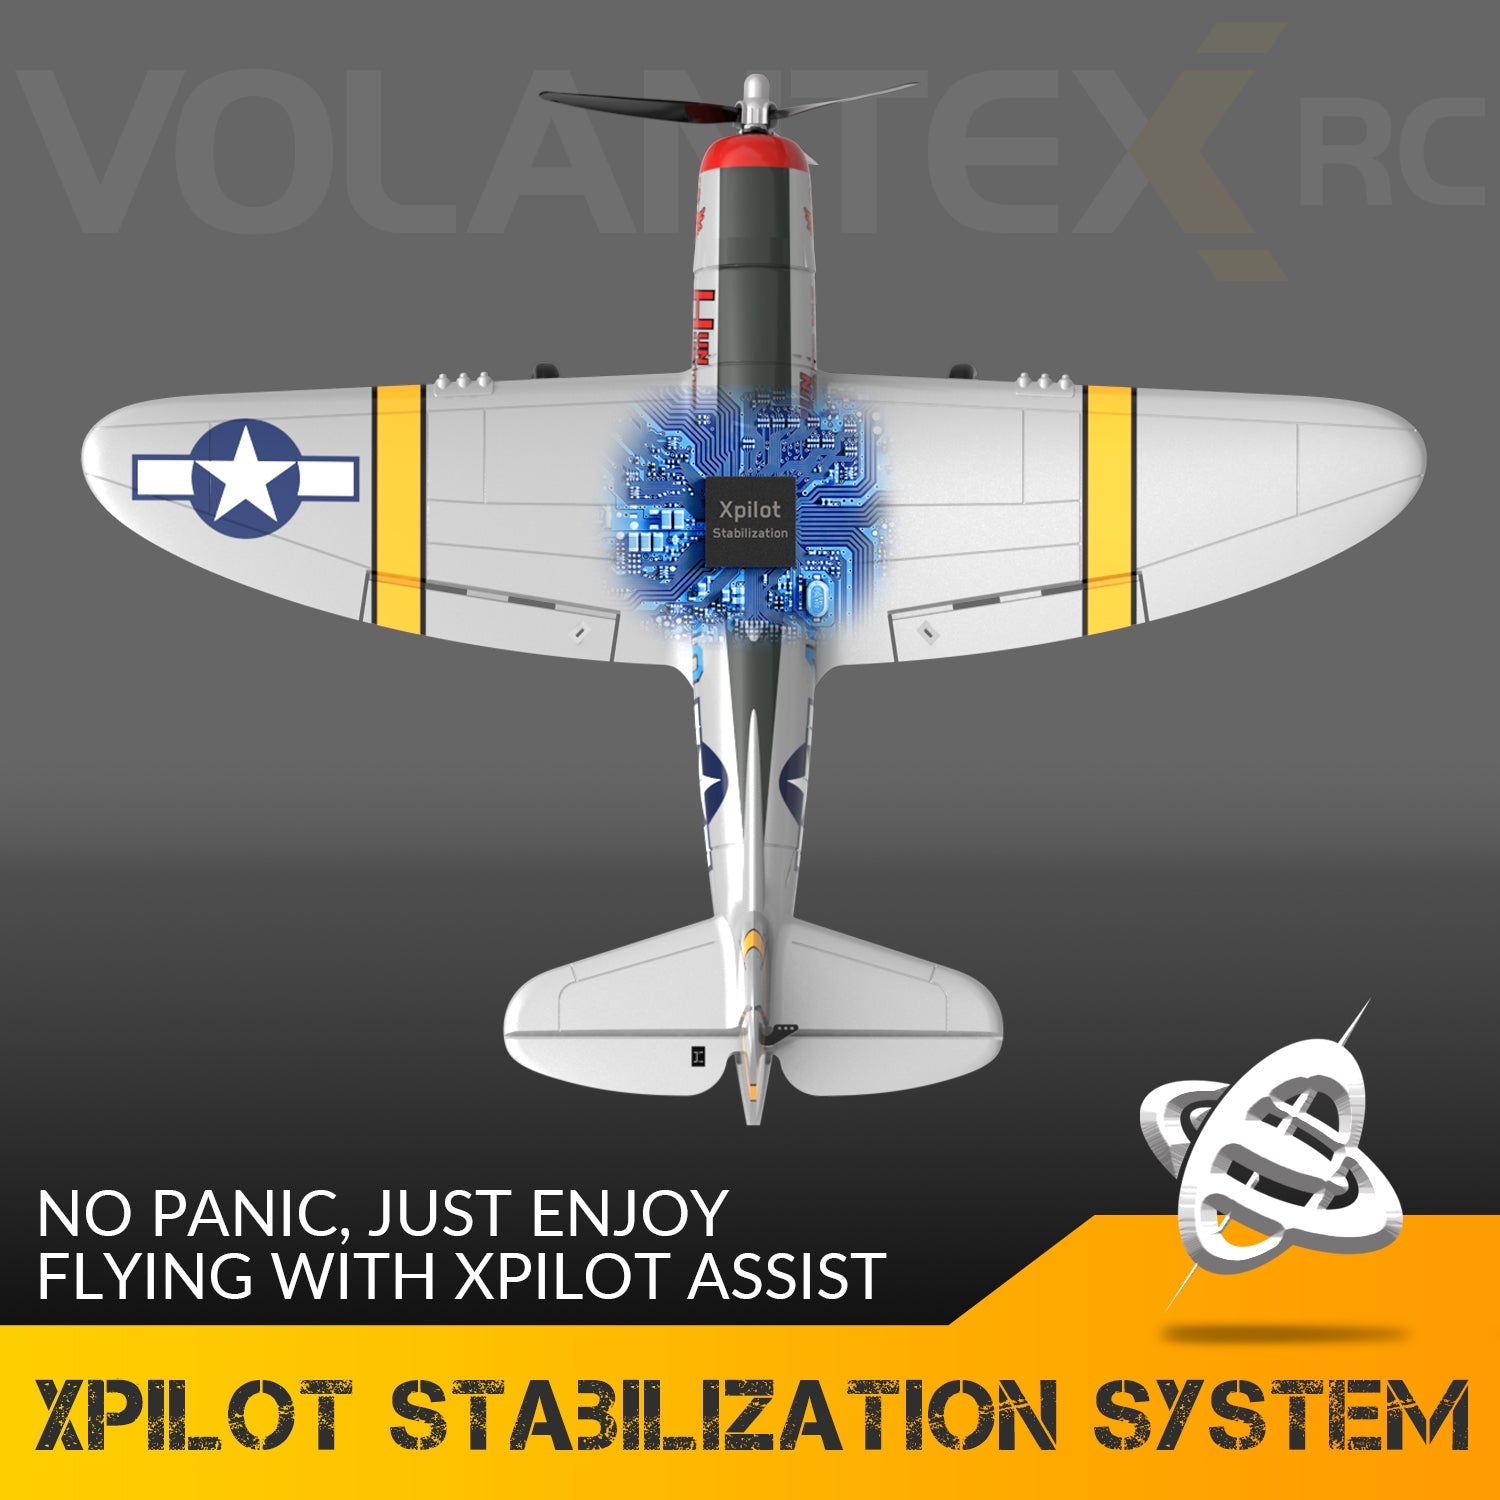 Avión de control remoto VOLANTEXRC Spitfire 4-CH listo para volar para principiantes con sistema de estabilización Xpilot (761-12) RTF